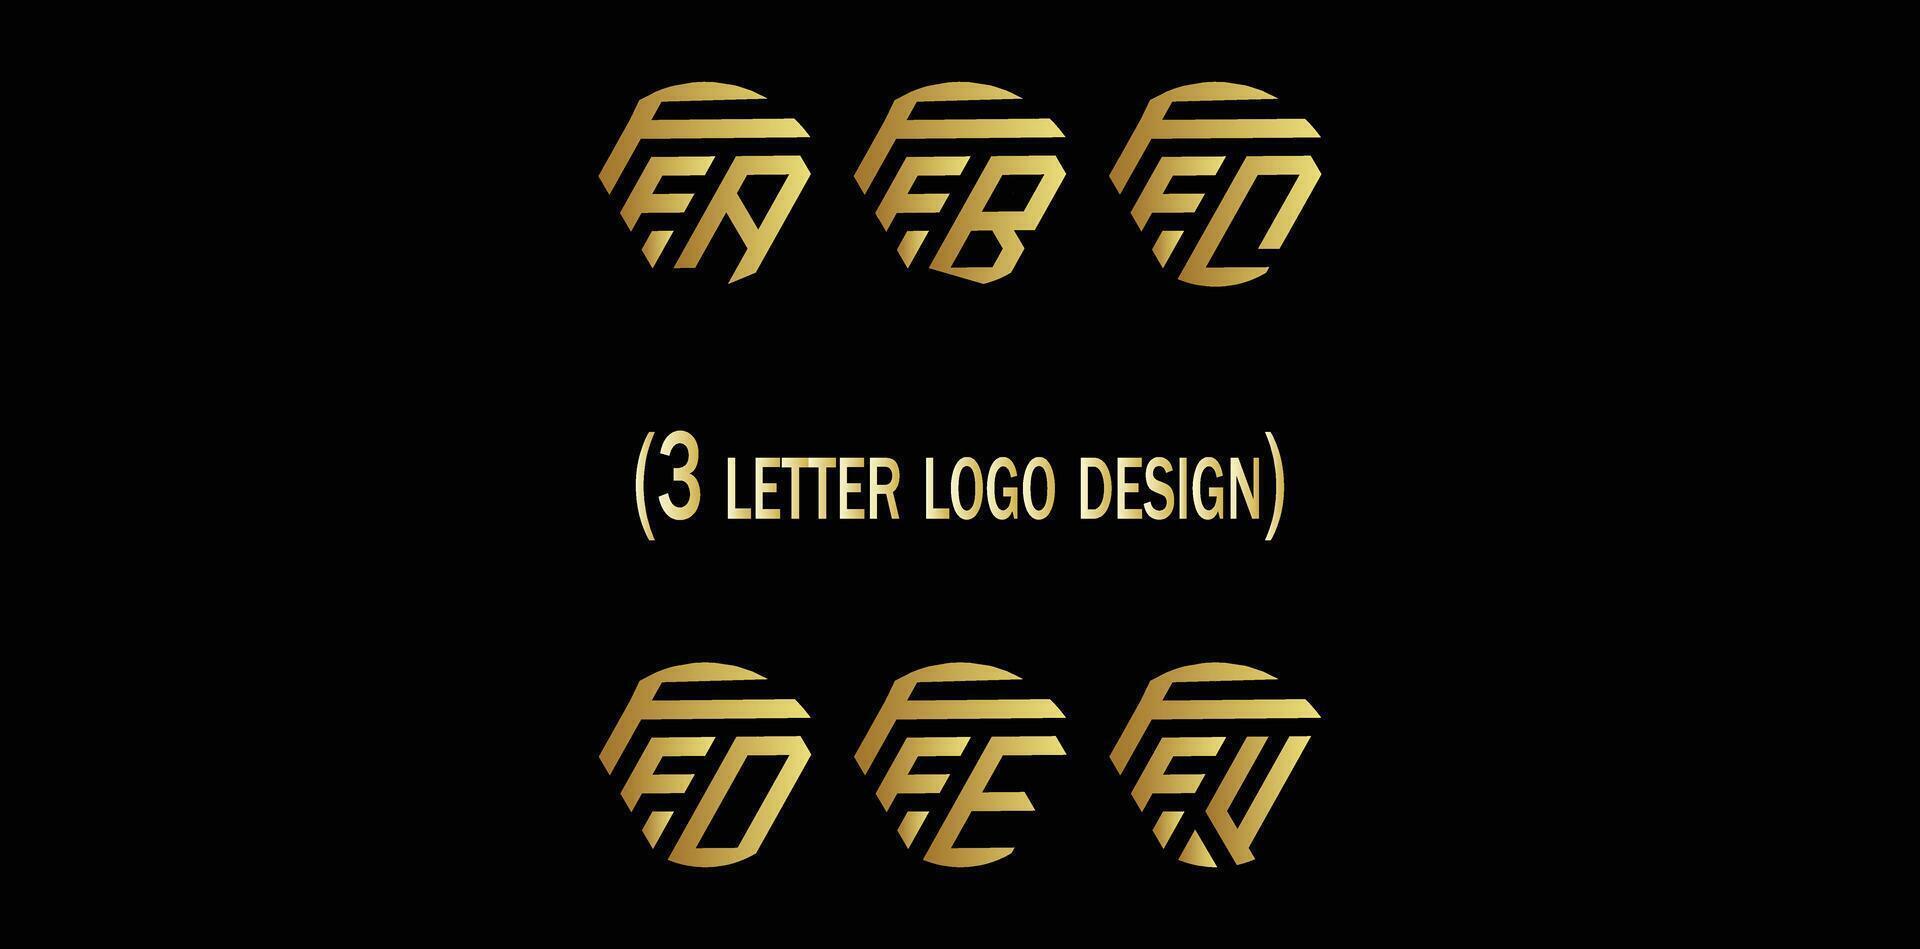 creativo 3 letra logo diseño,ffa,ffb,ffc,ffd,ffe,fff, vector